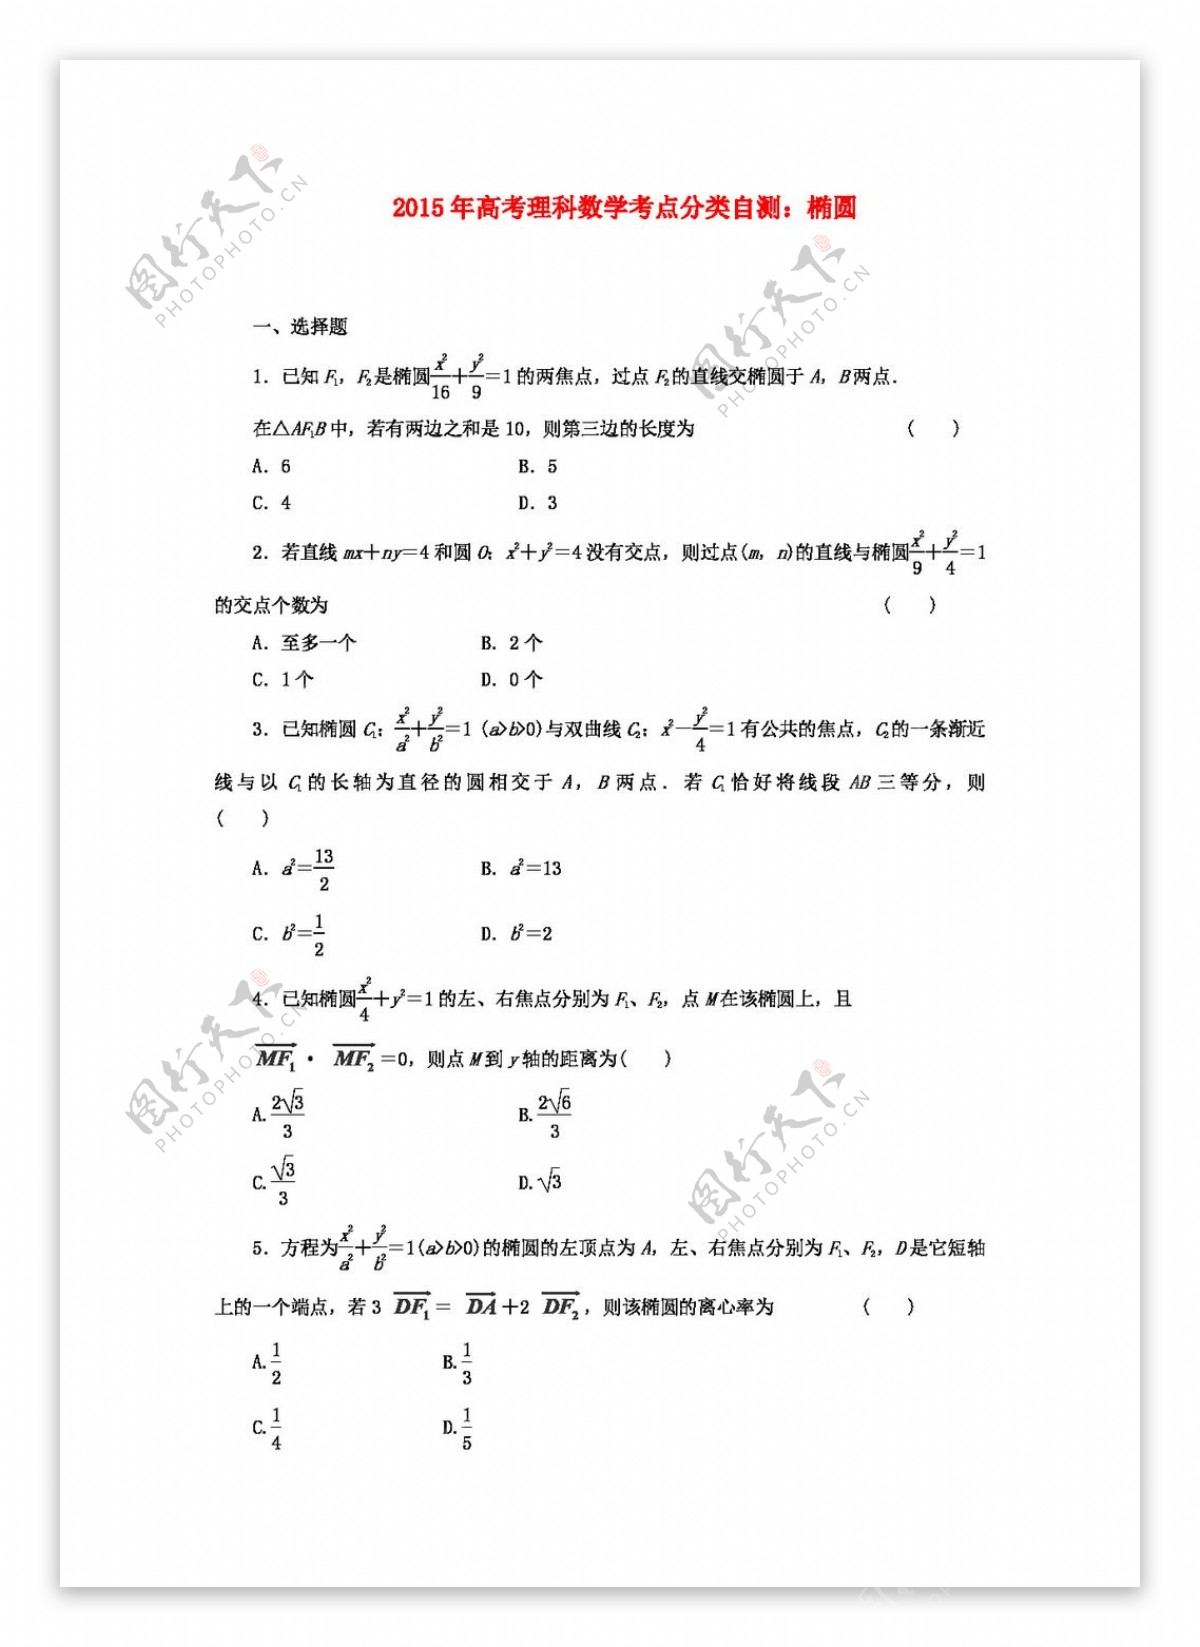 数学人教版高考理科数学考点分类自测椭圆